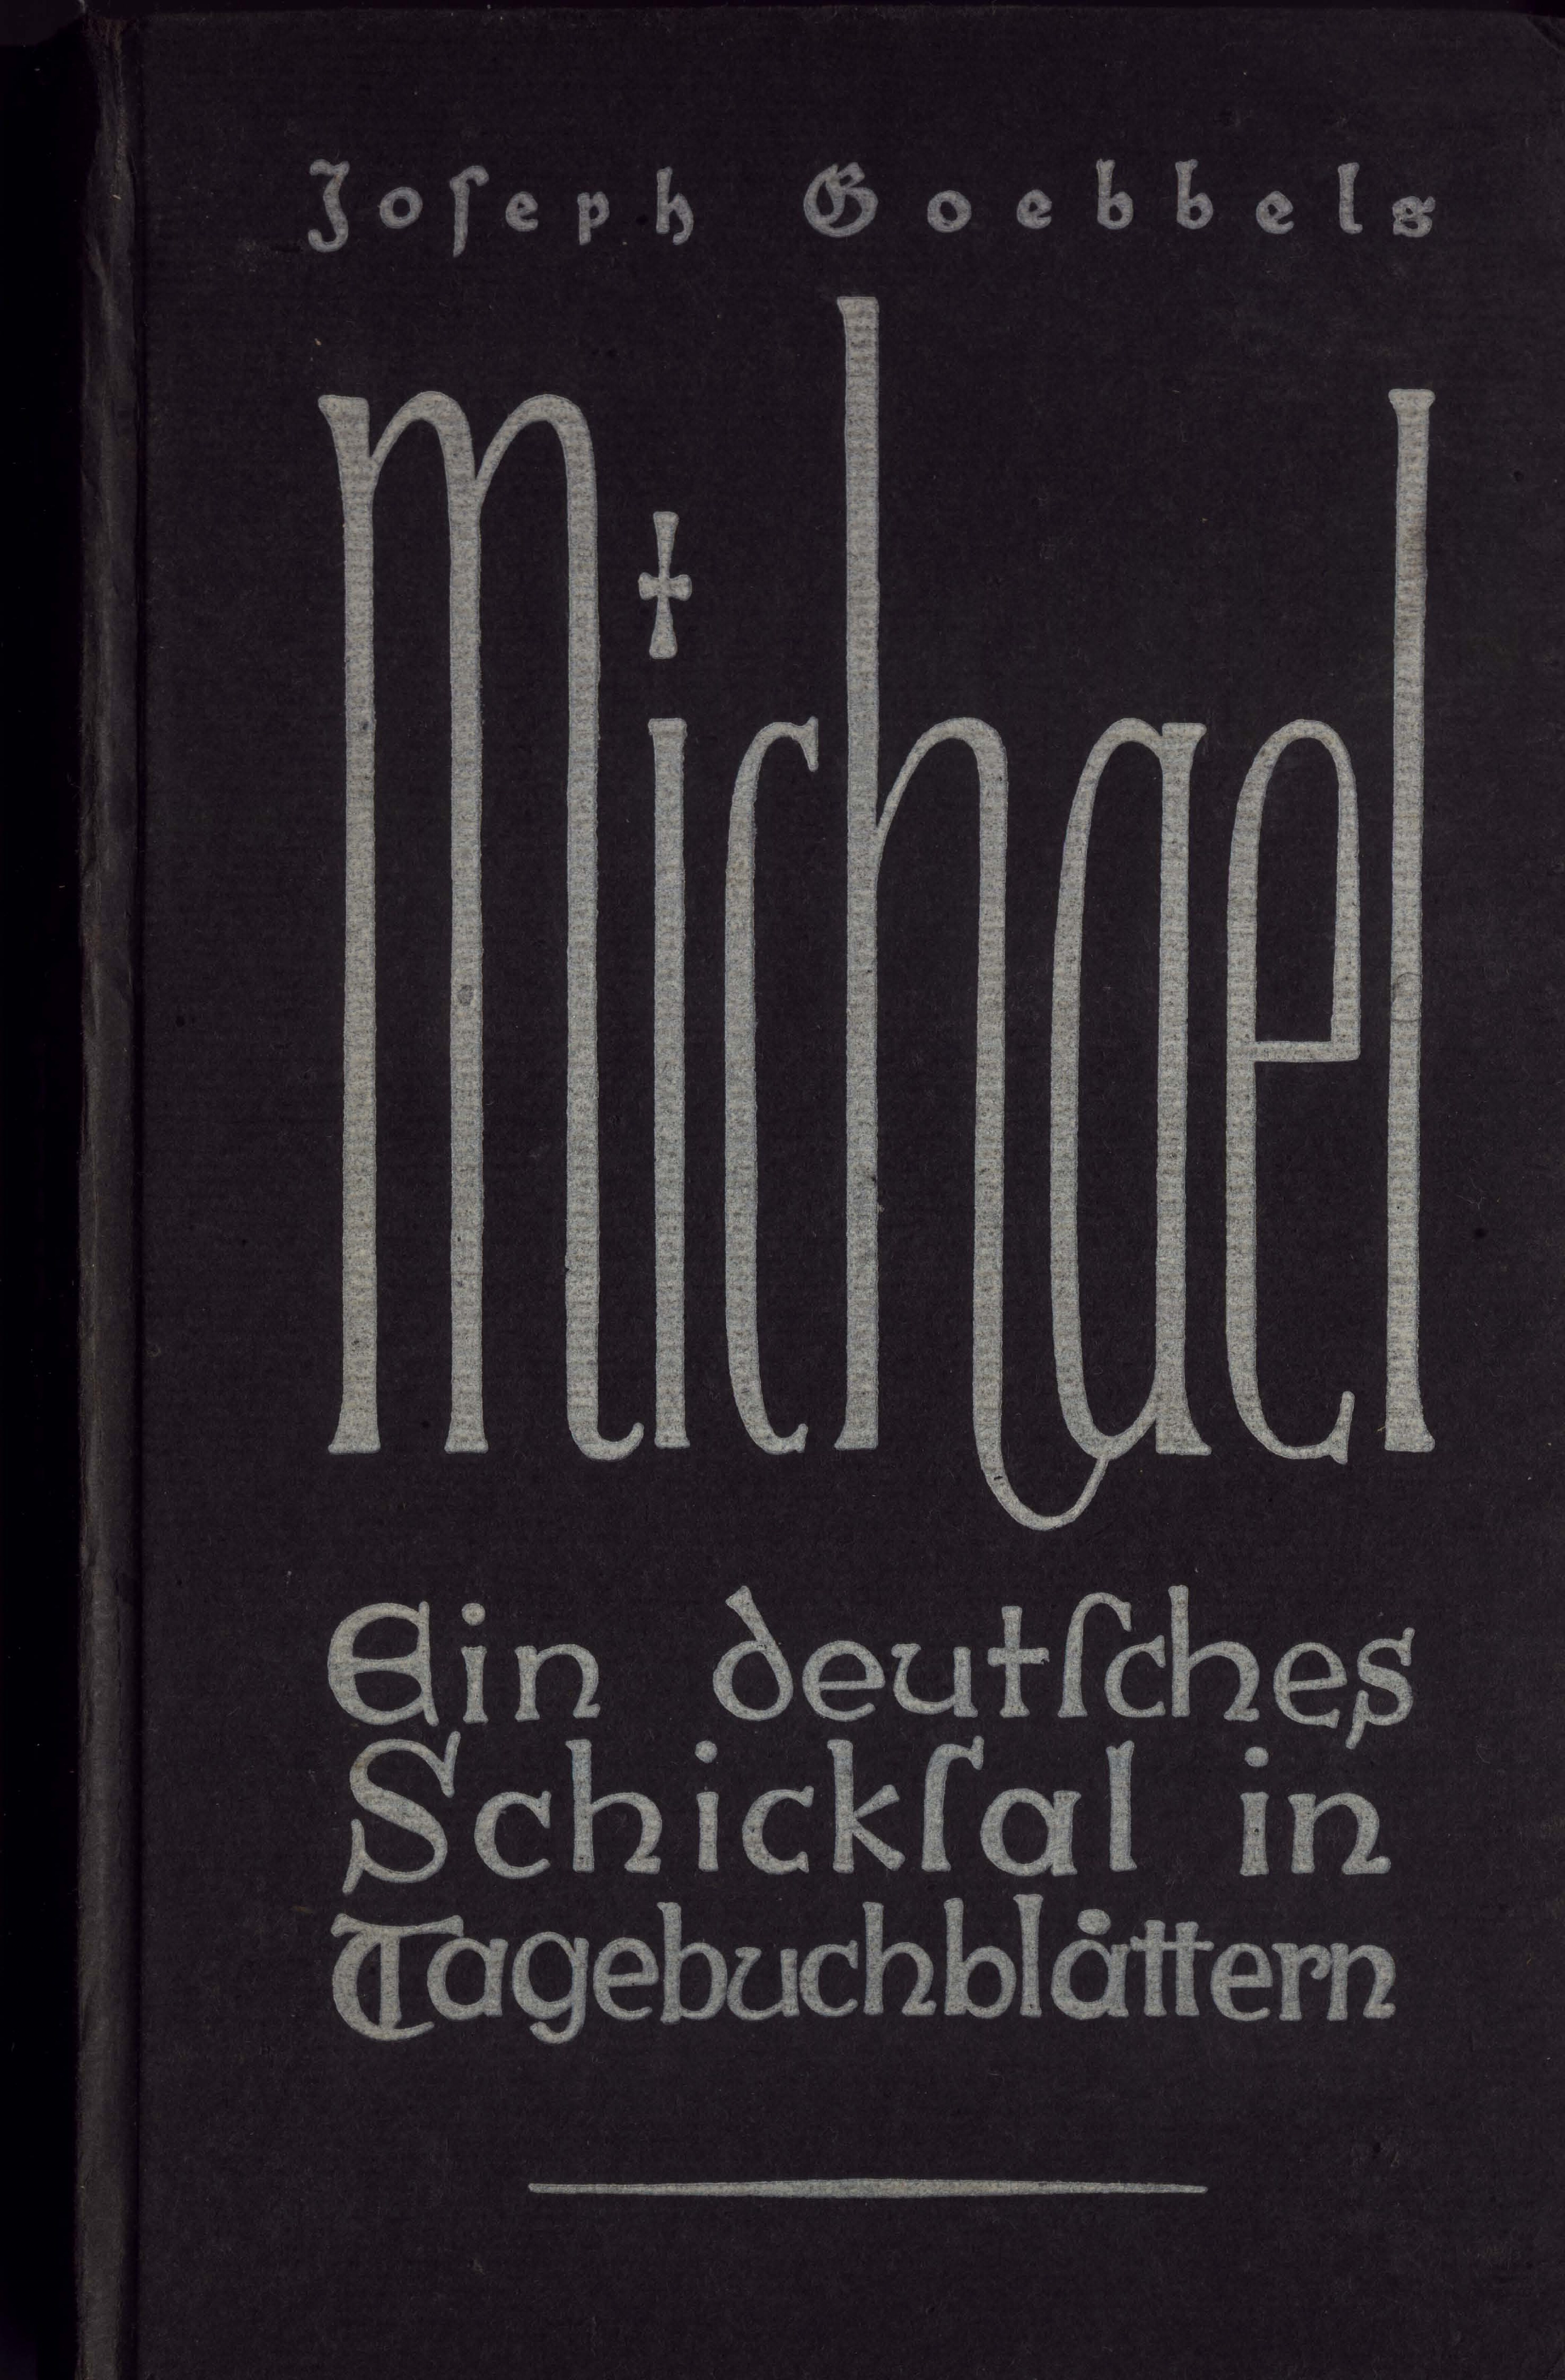 Ein deutsches Schicksal in Tagebuchblaettern (1942, 160 S., Scan)